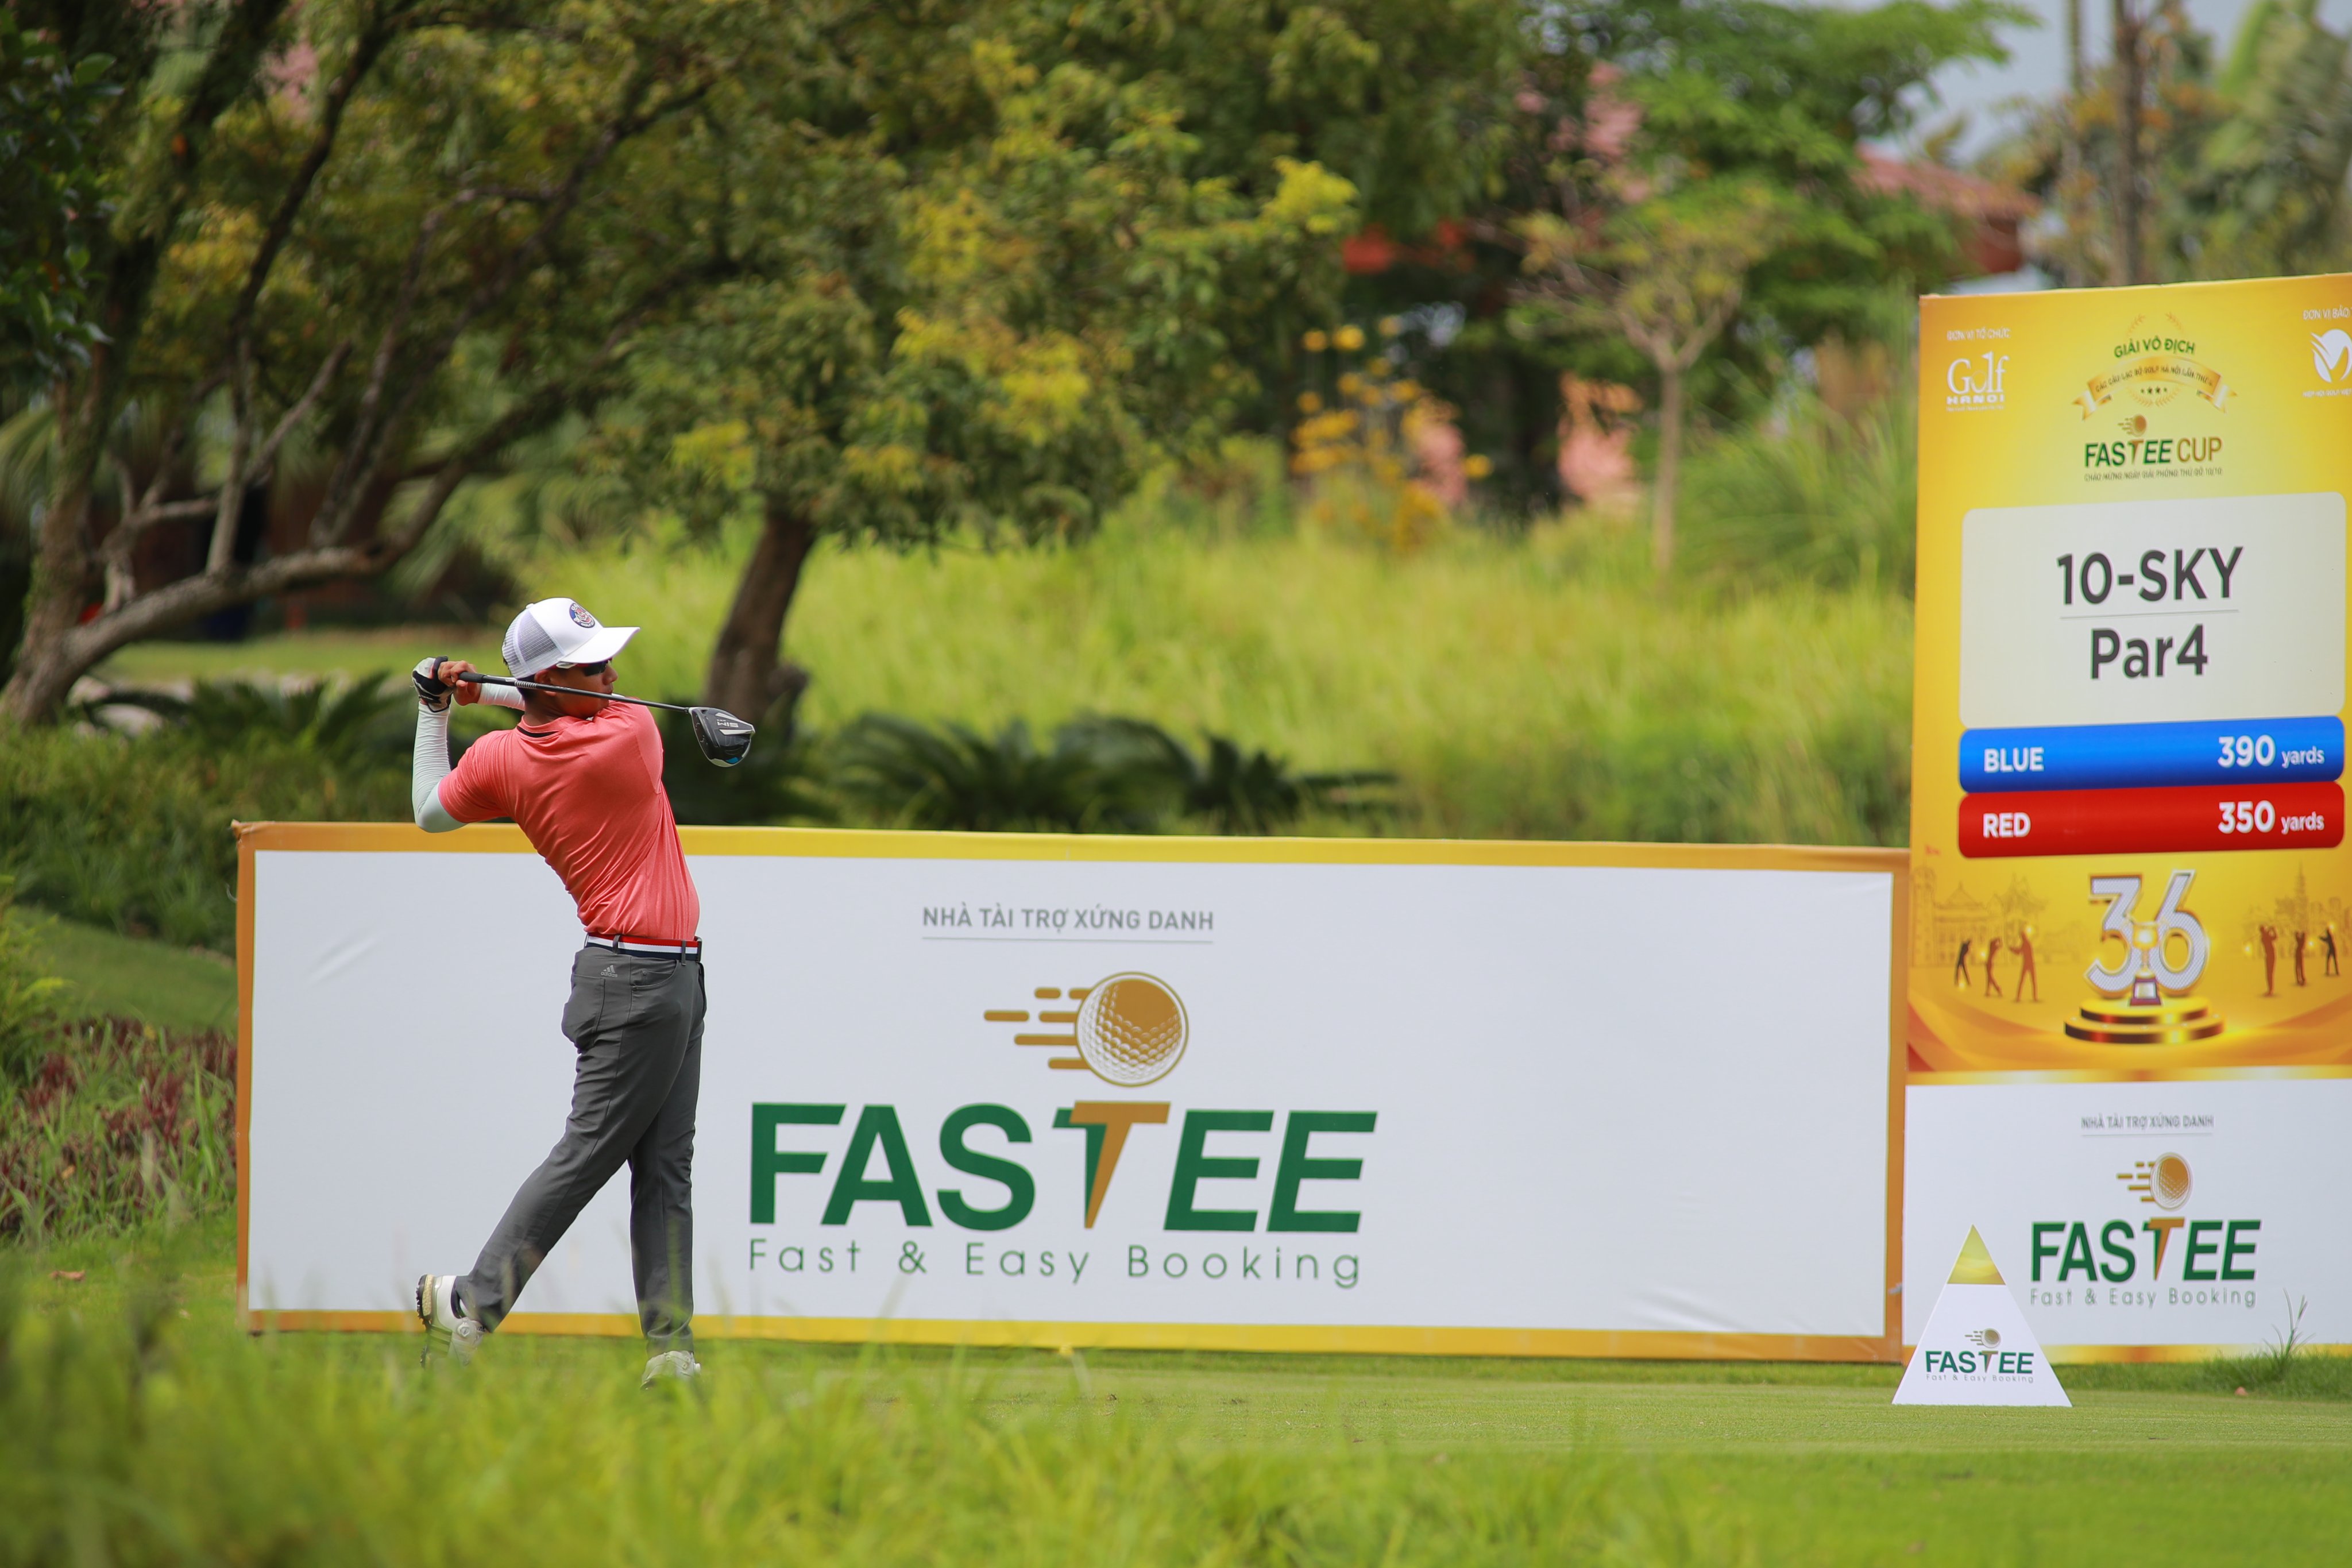 Danh sách chia nhóm vòng chung kết giải Vô địch các CLB golf Hà Nội lần thứ 4 - Fastee Cup 2020